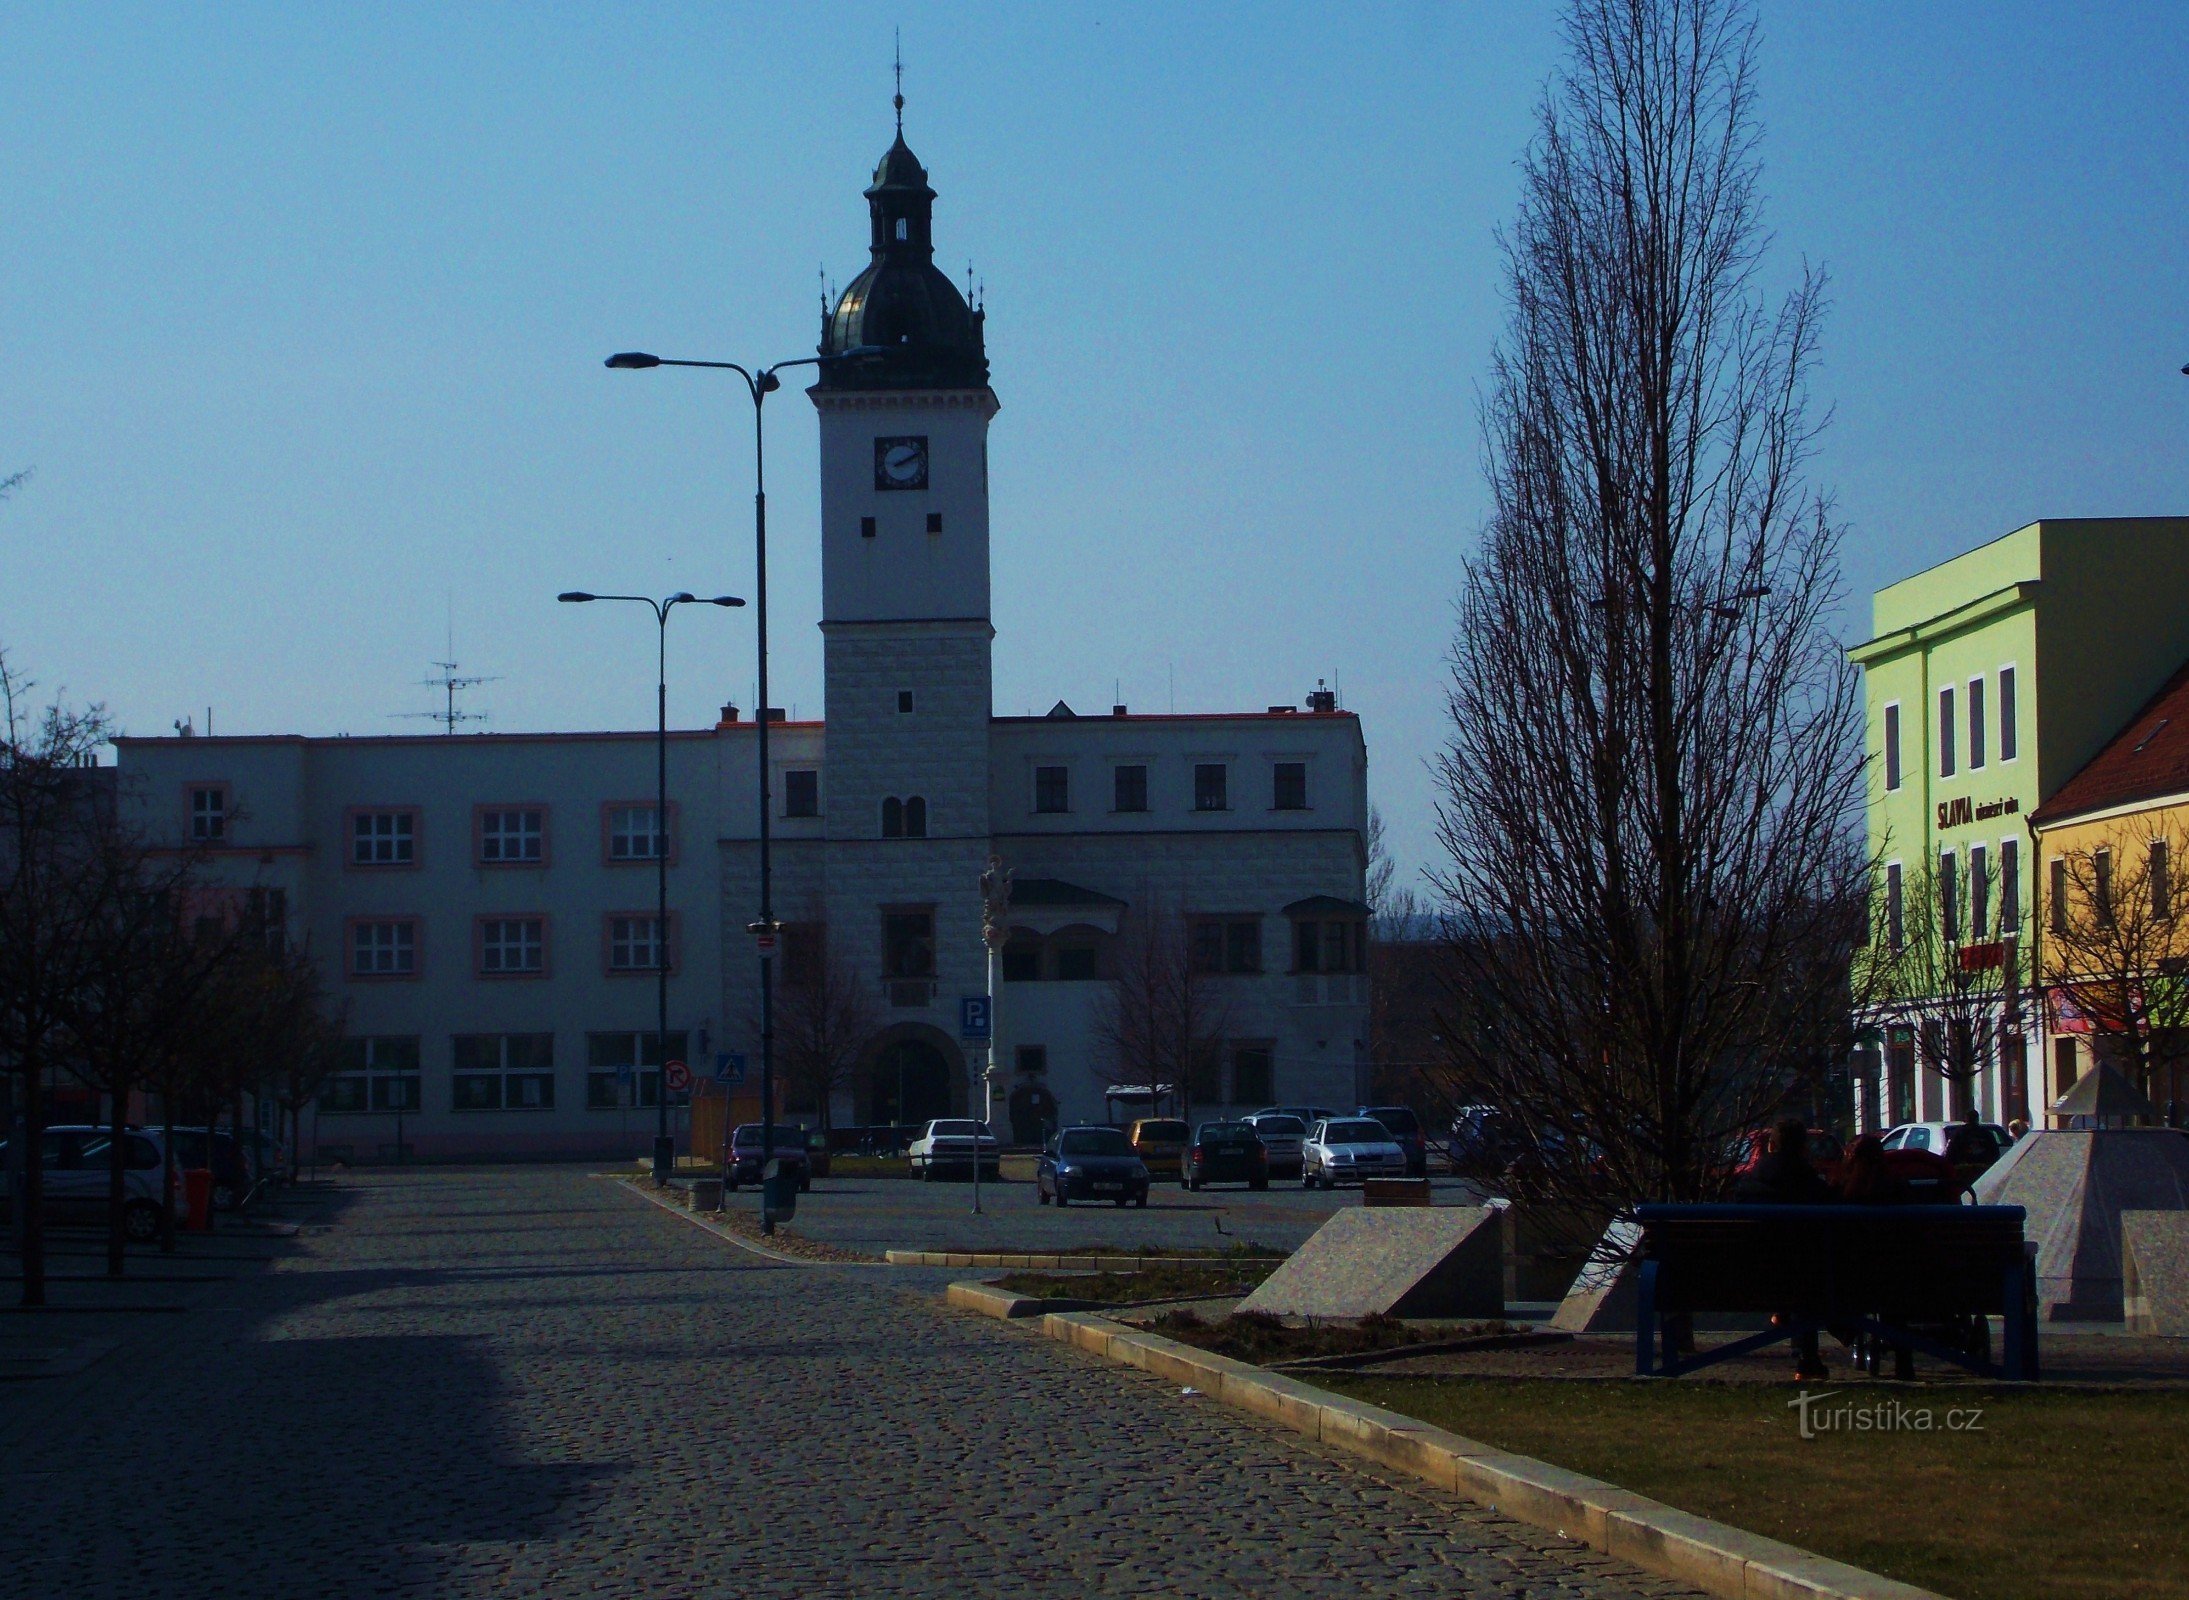 Zgodovinska mestna hiša, spomenik Kyjova